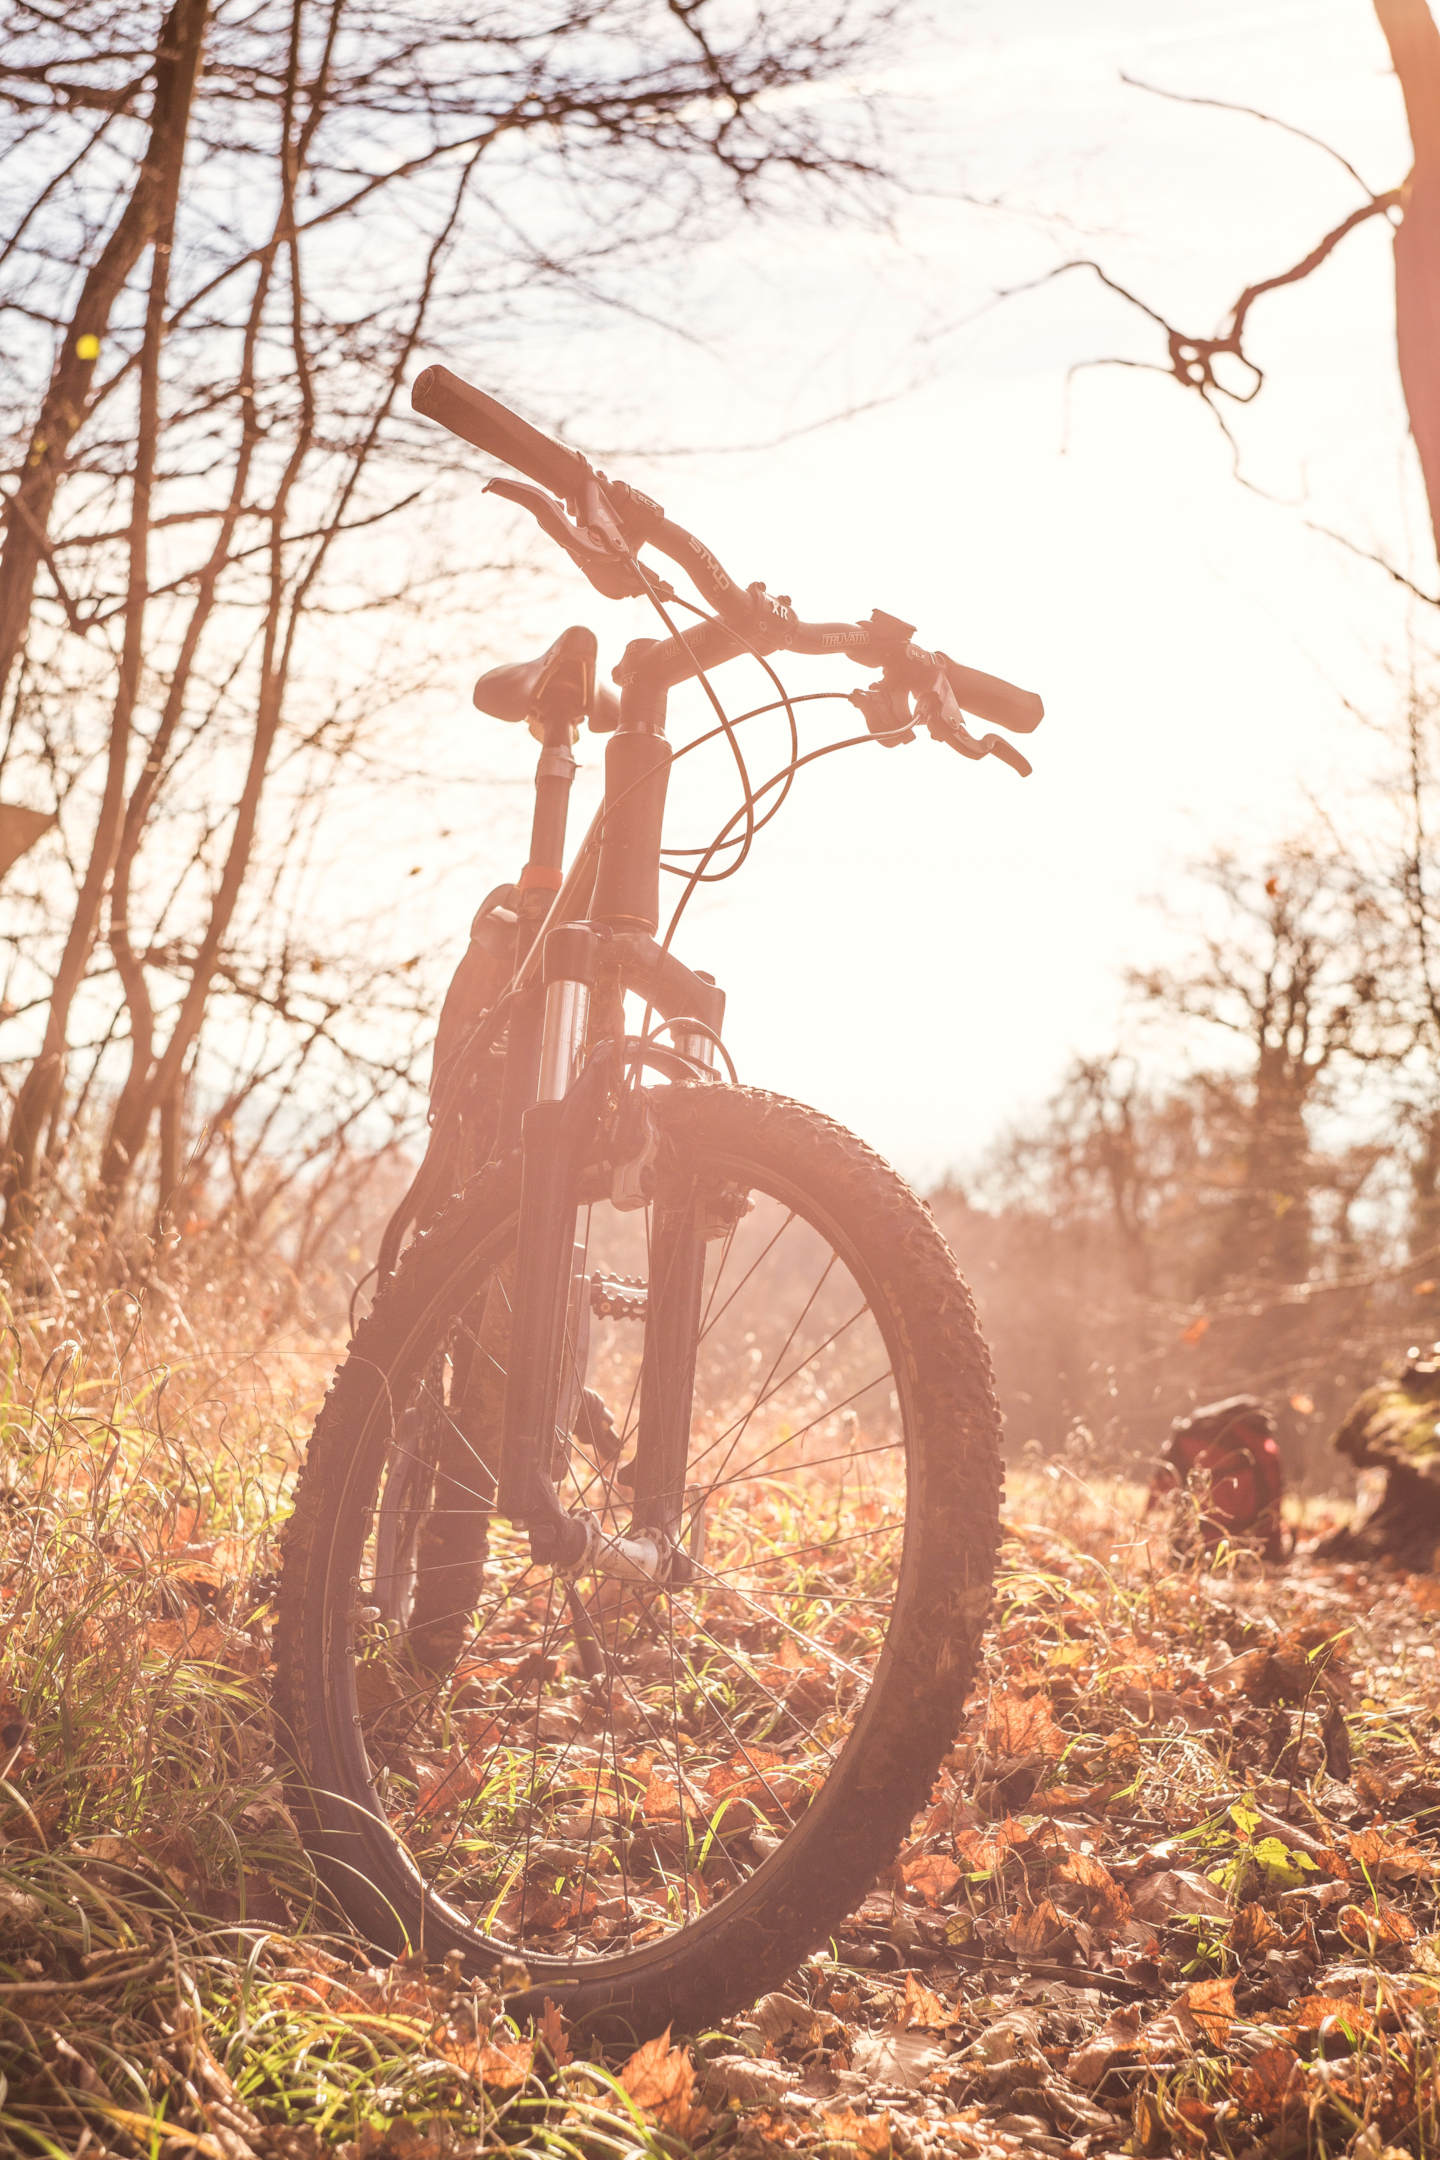 Bike com suspensão instalada. Foto de Markus Spiske, Pexels.